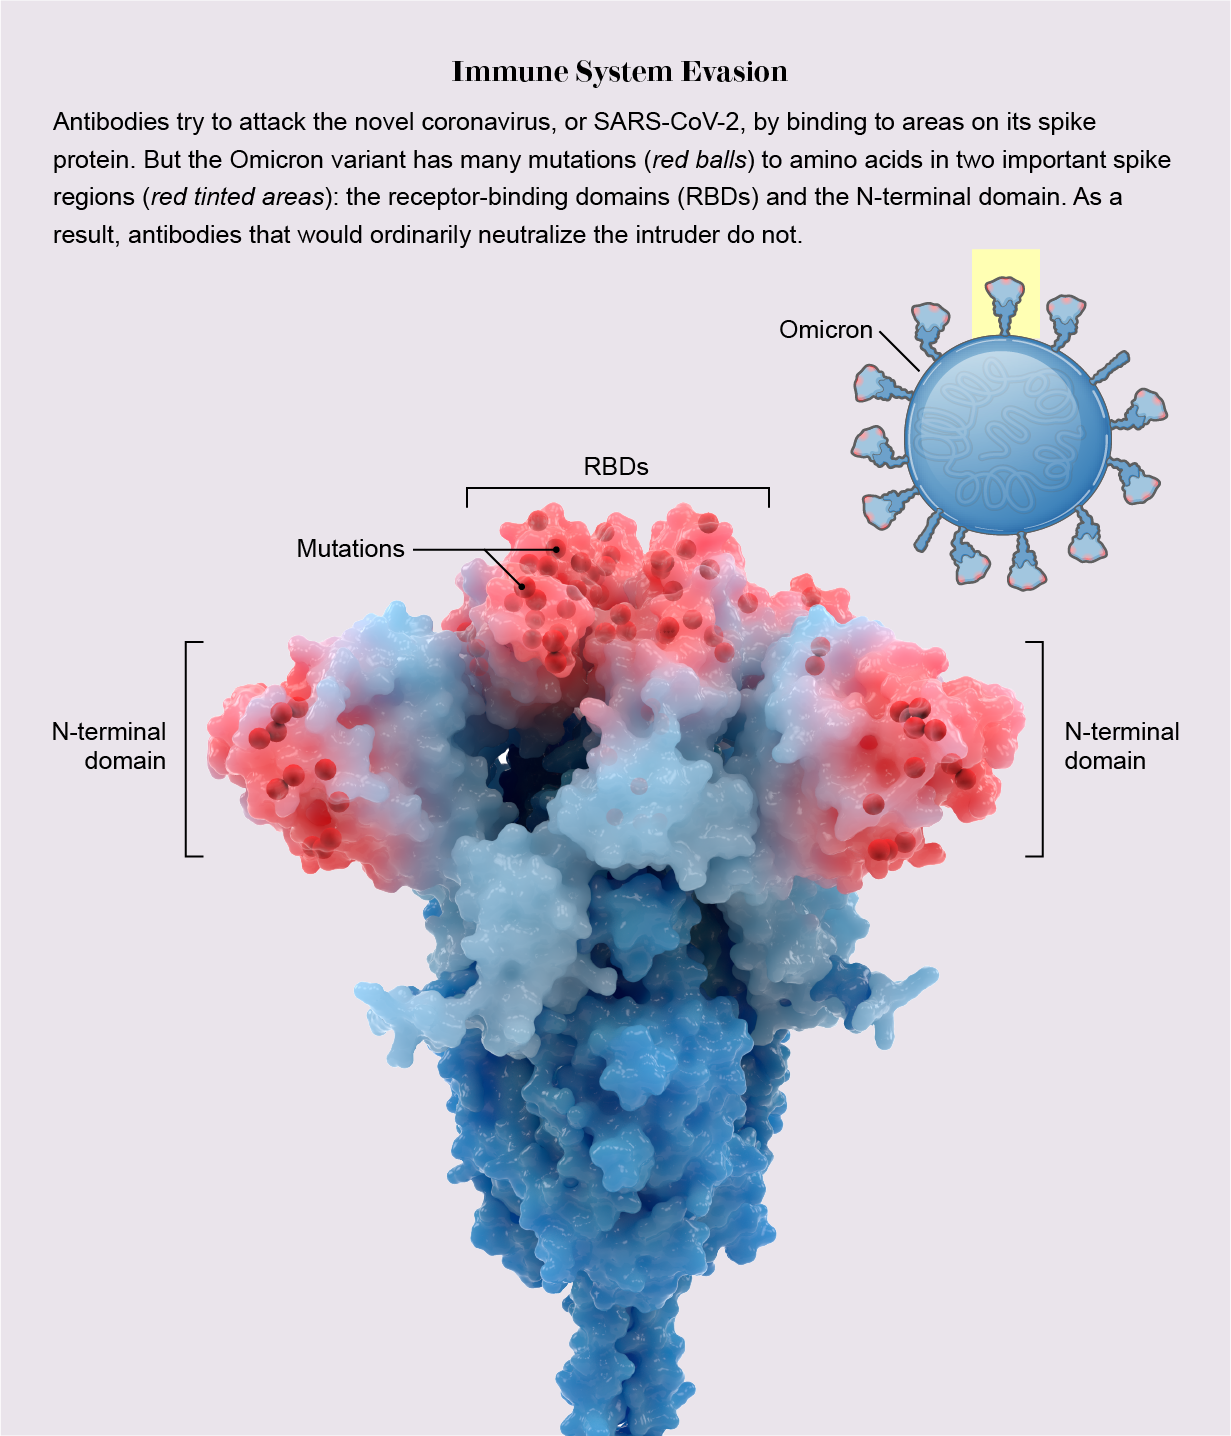 O gráfico mostra a estrutura da proteína spike da variante Omicron e destaca as principais mutações que ajudam a evitar anticorpos.